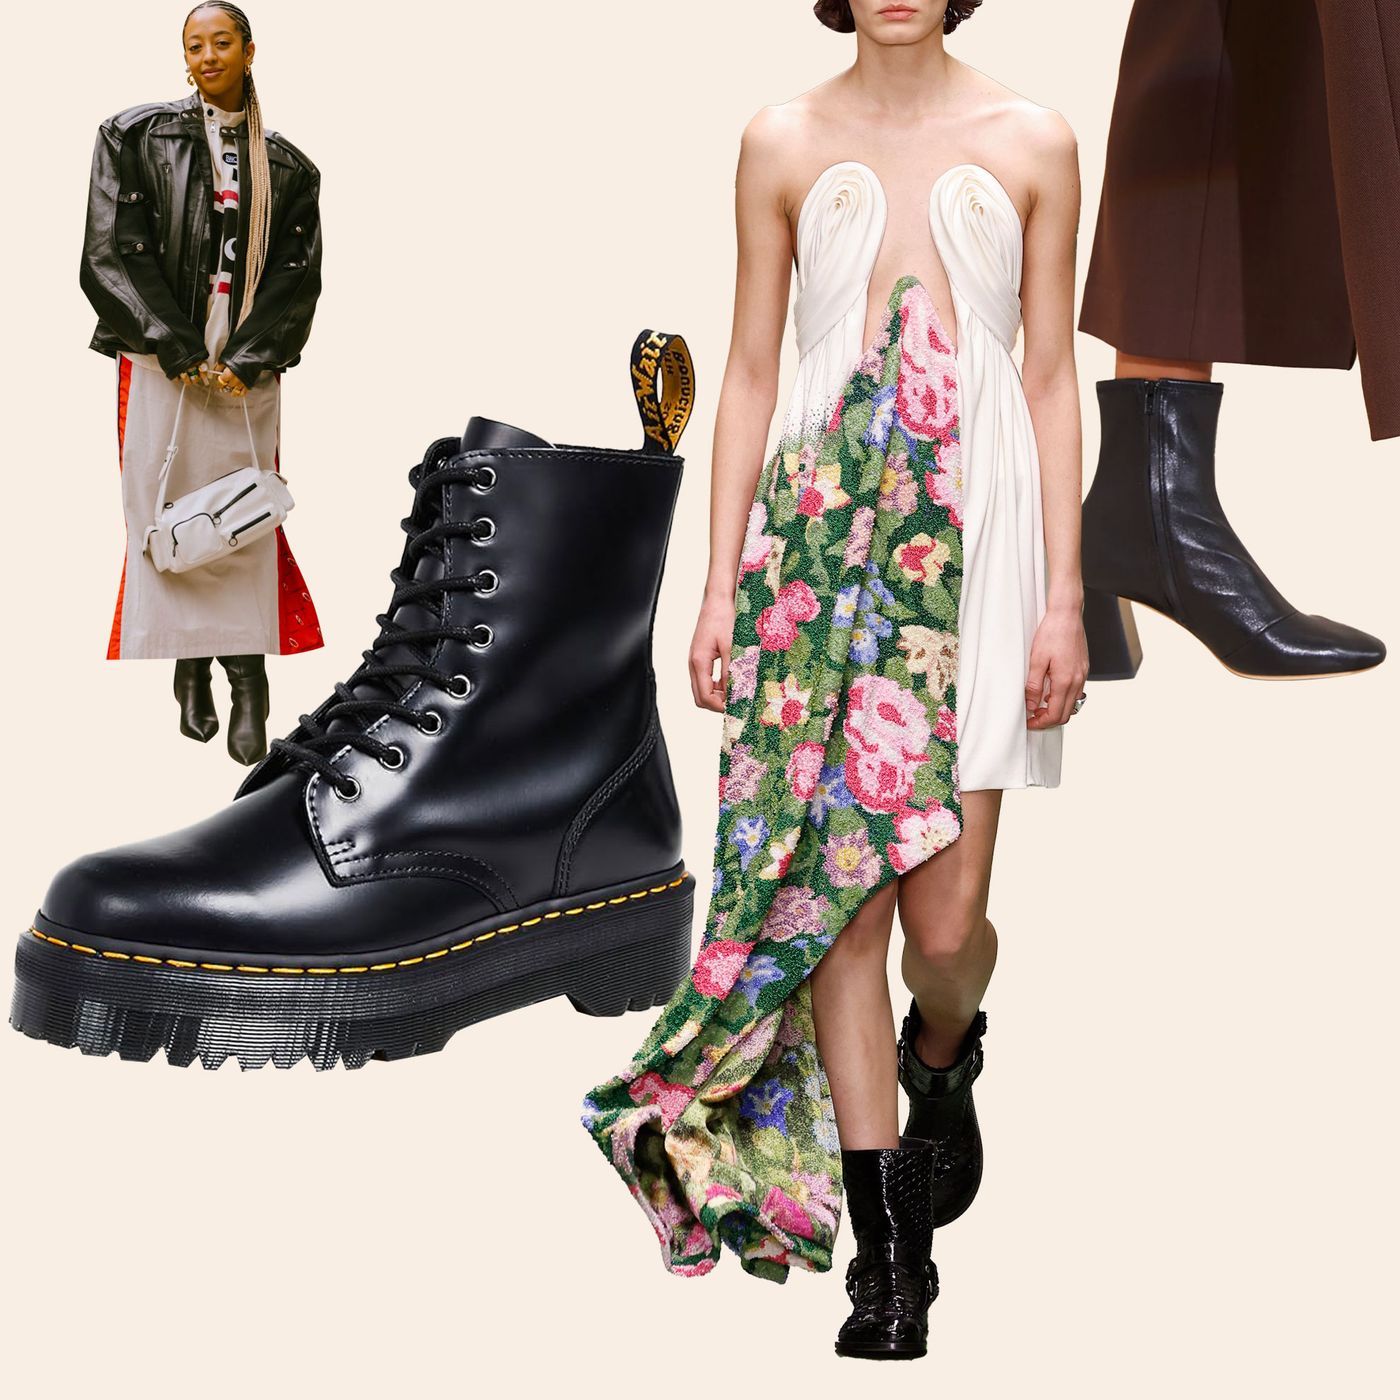 19 Best Black dress & boots ideas  black dress boots, dress, black dress